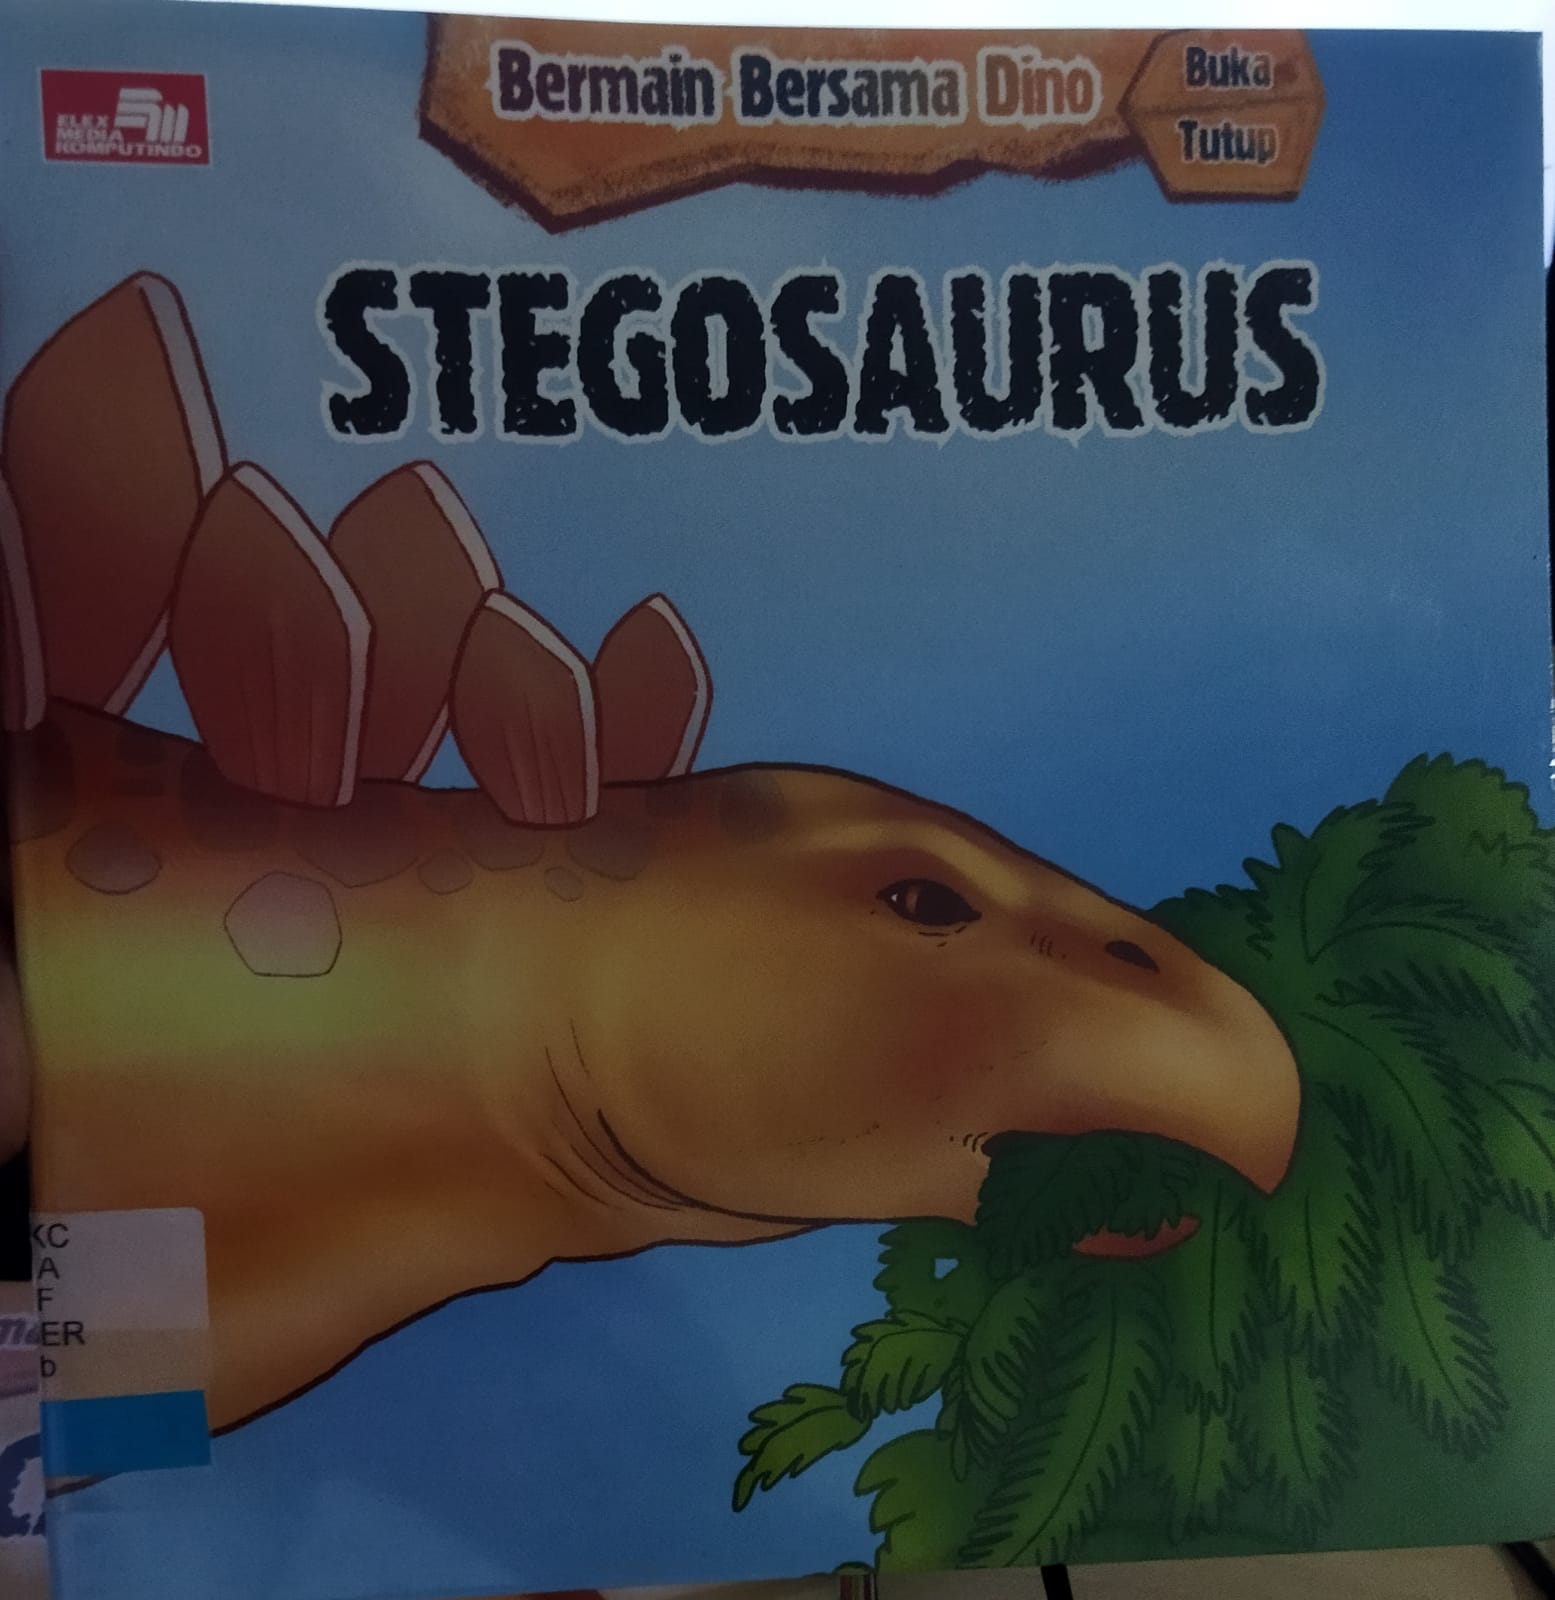 BERMAIN bersama dino stegosaurus